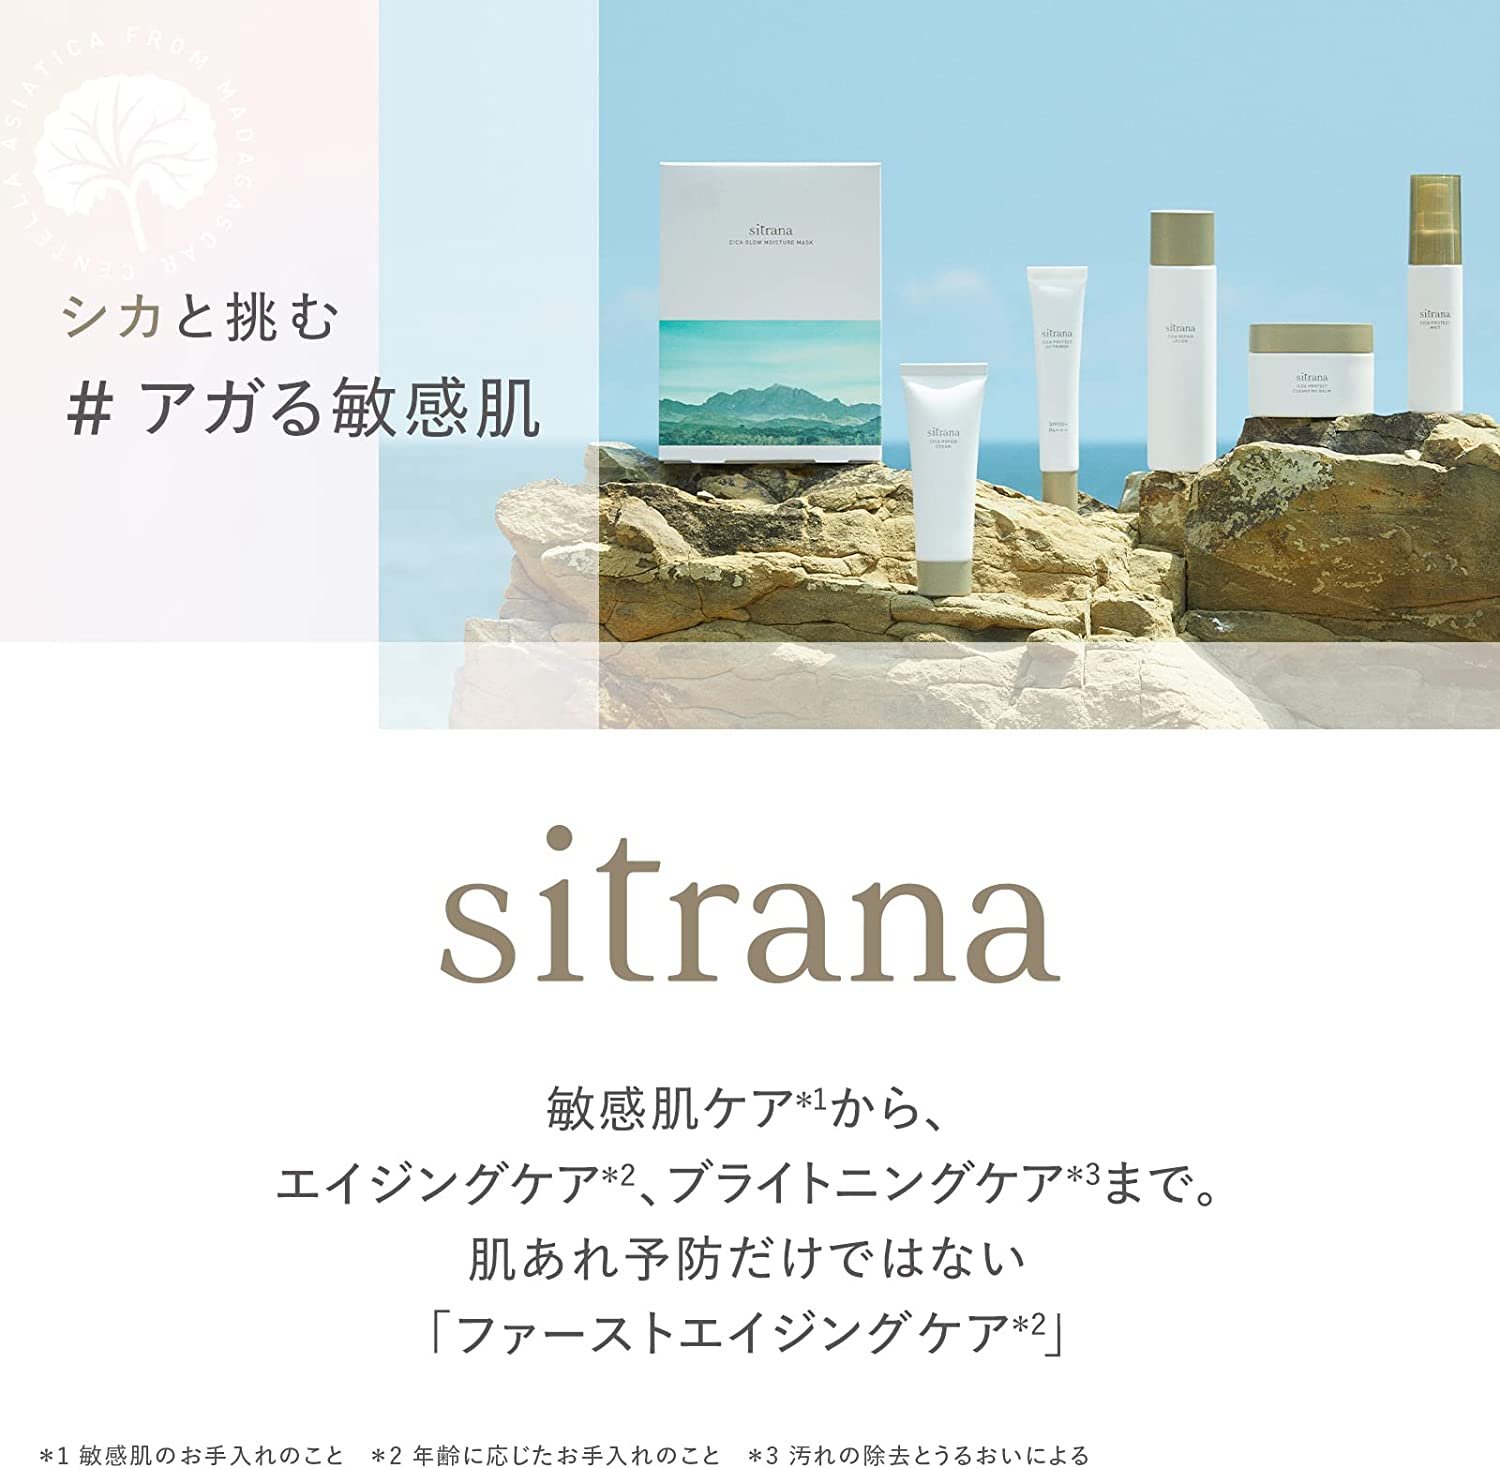 【精華液】日本 sitrana 保養系列 敏感肌可用 保濕噴霧 化妝水 潔面乳 精華液 隔離霜 旅行試用組 DUO